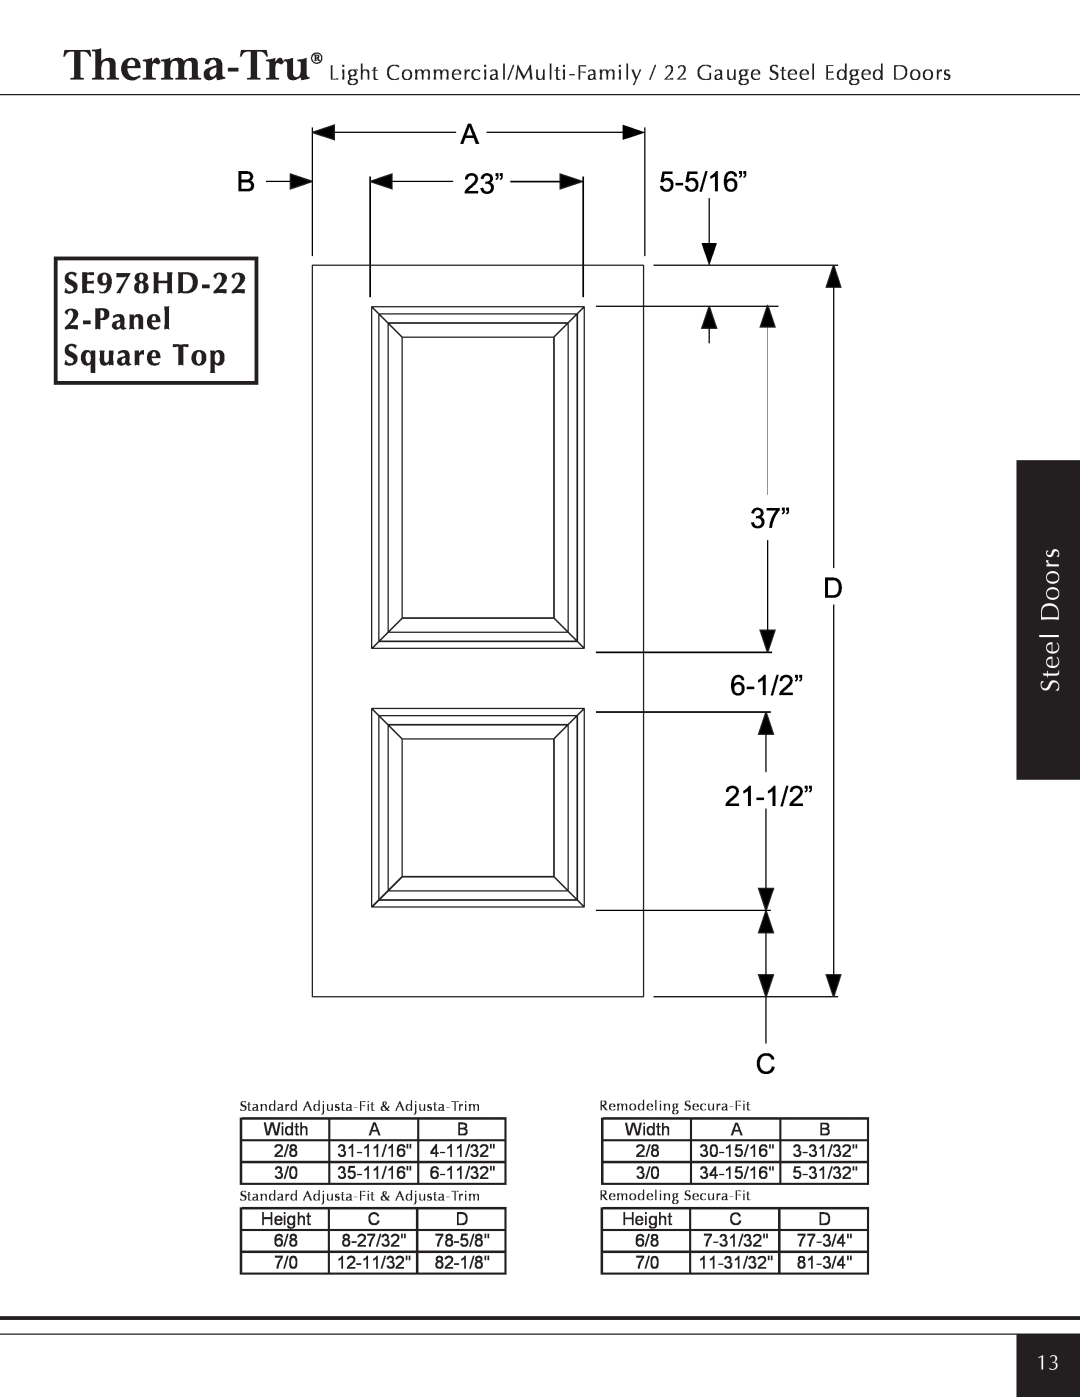 Therma-Tru Light Commercial/Multi-Family / 22 & 24 Gauge Steel Edged Door manual SE978HD-22 2-PanelSquare Top, Steel Doors 